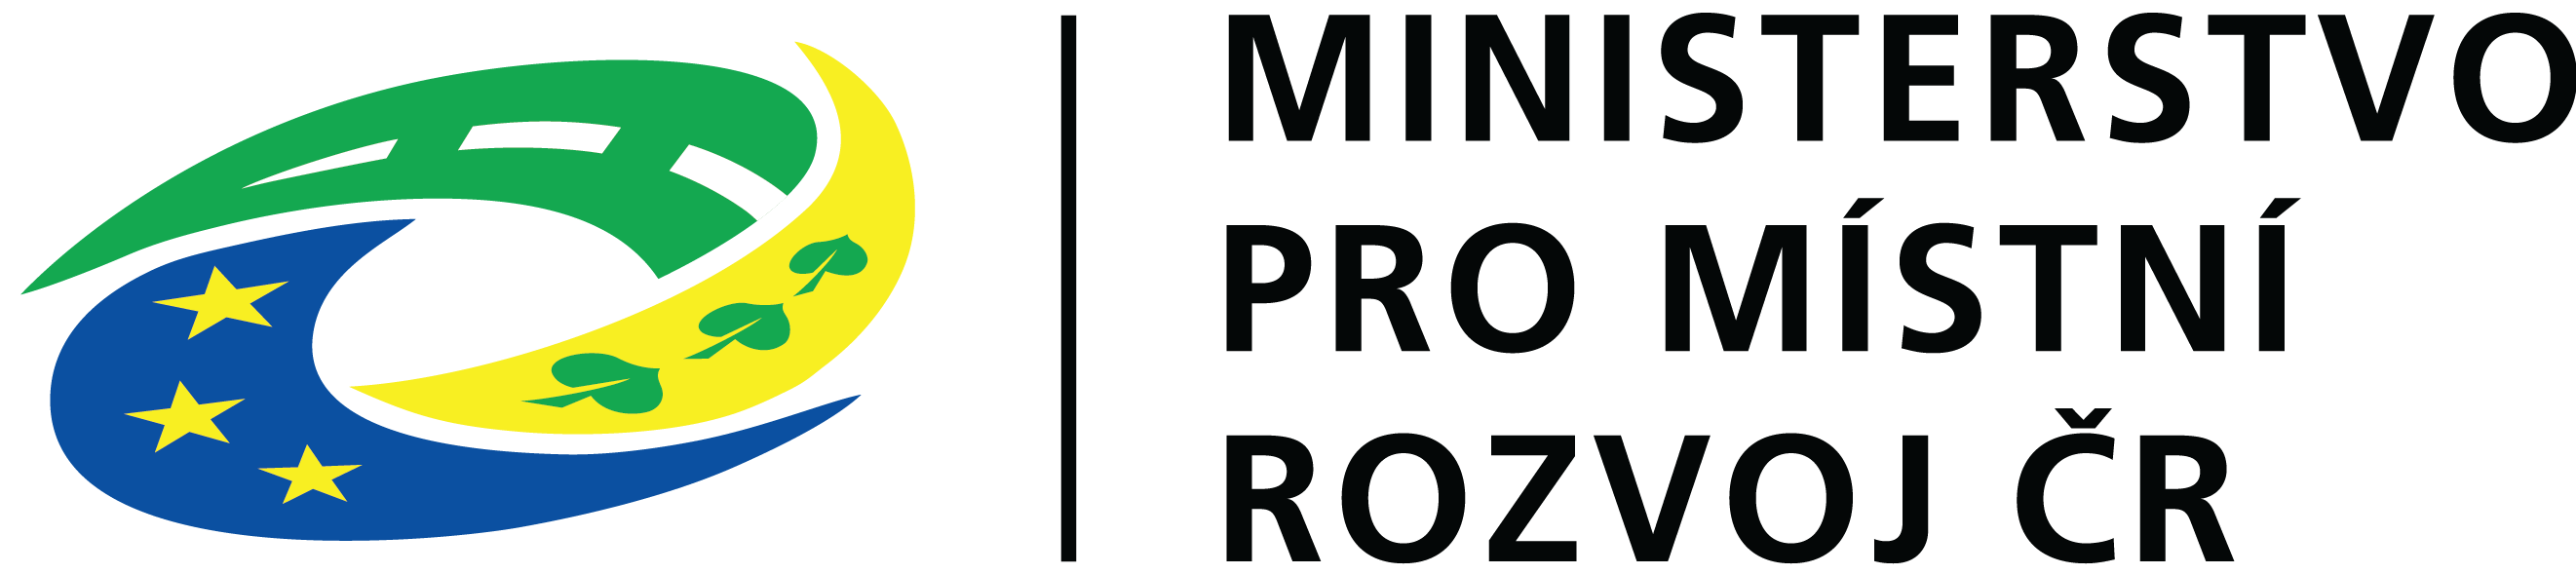 Logo MMR